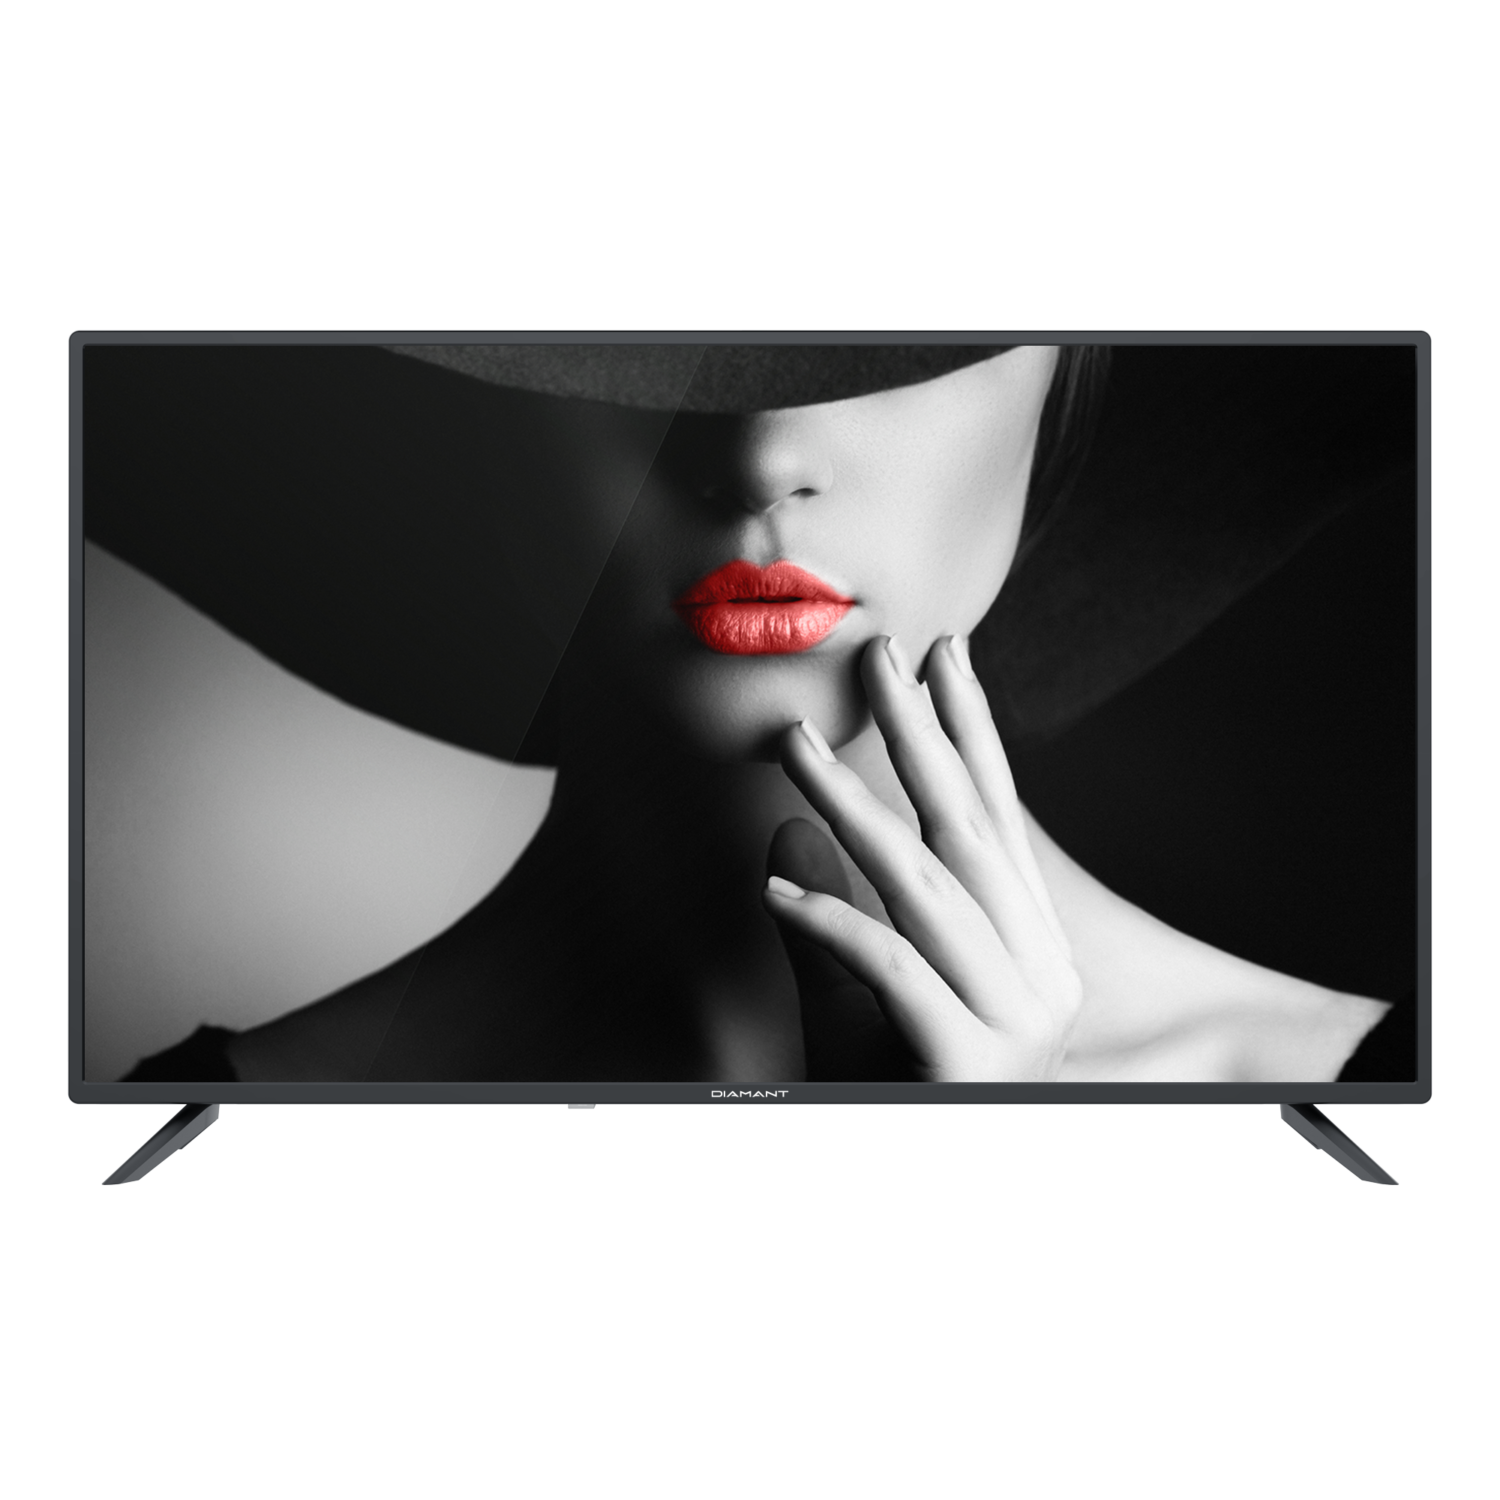 Televizor led horizon 40hl4300f/c 101cm full hd negru